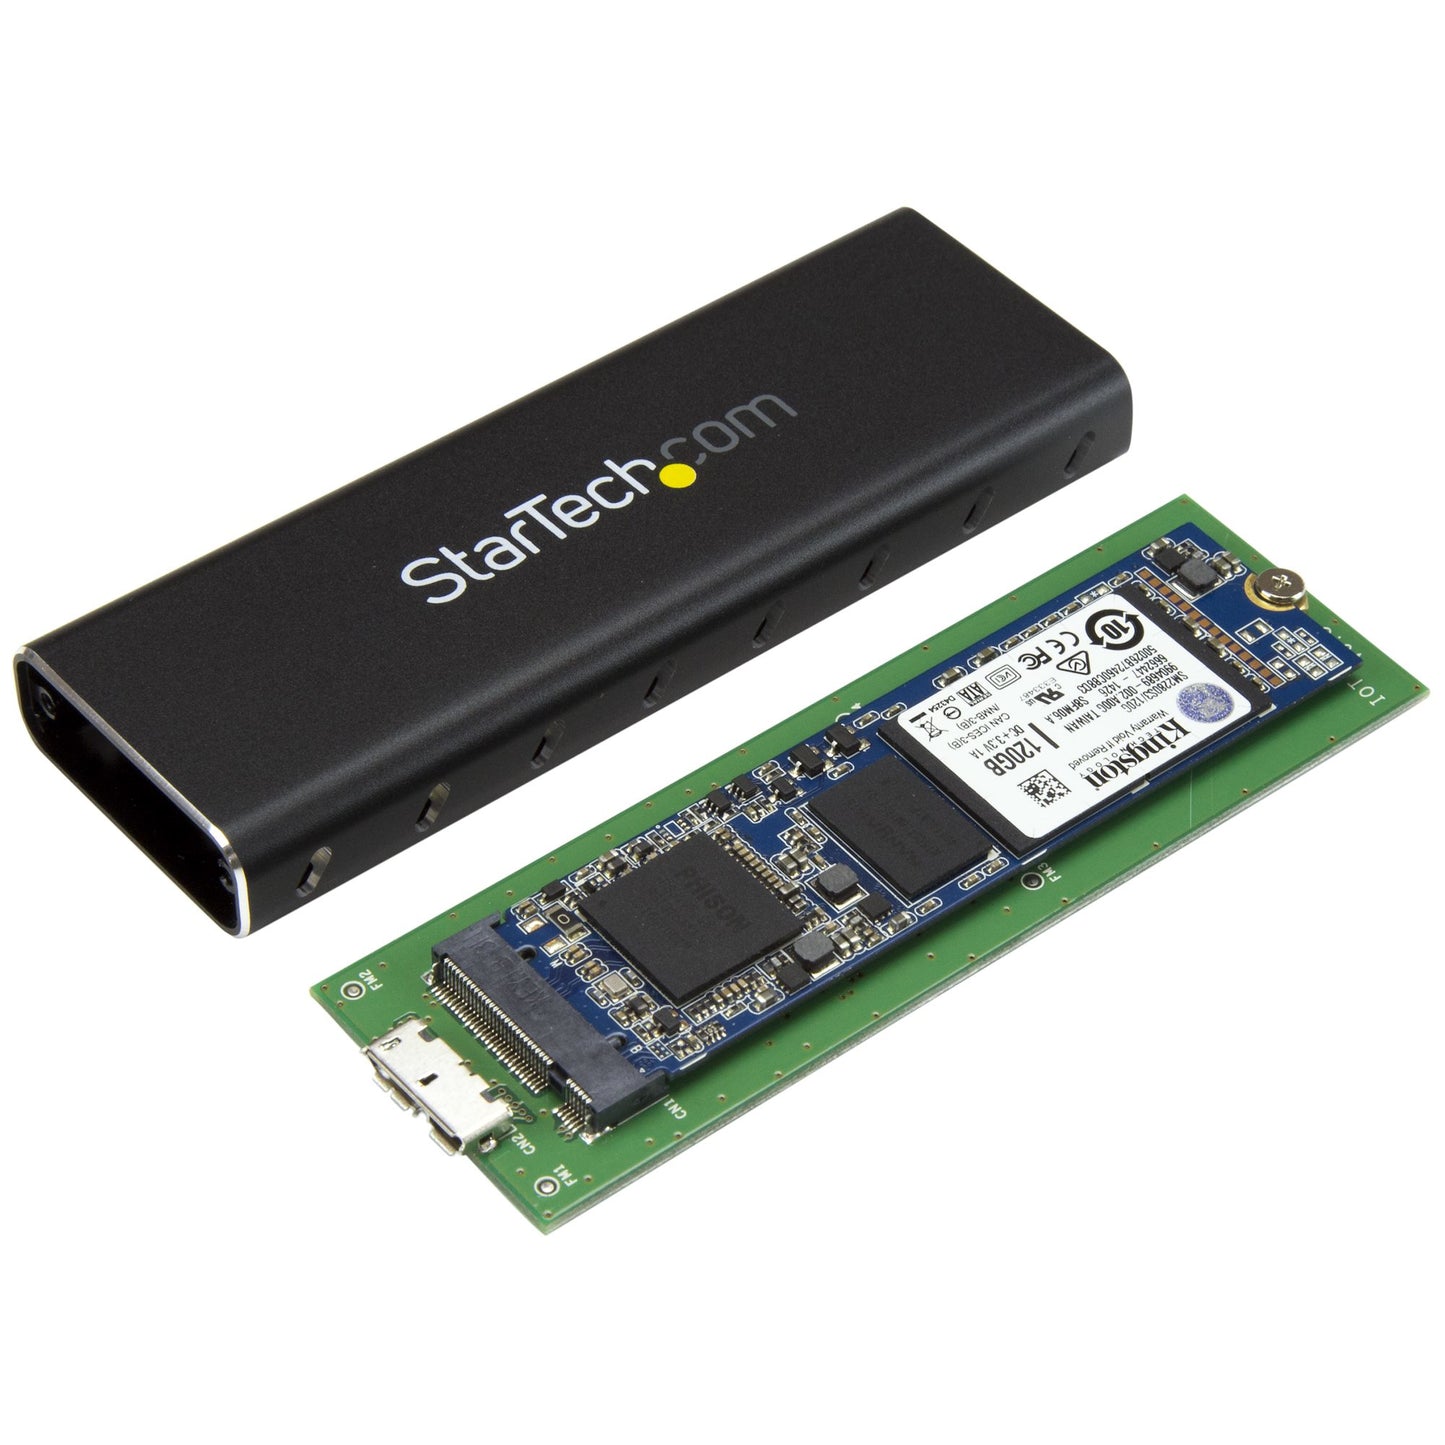 StarTech.com M.2 SSD Enclosure for M.2 SATA SSDs - USB 3.0 (5Gbps) with UASP-1